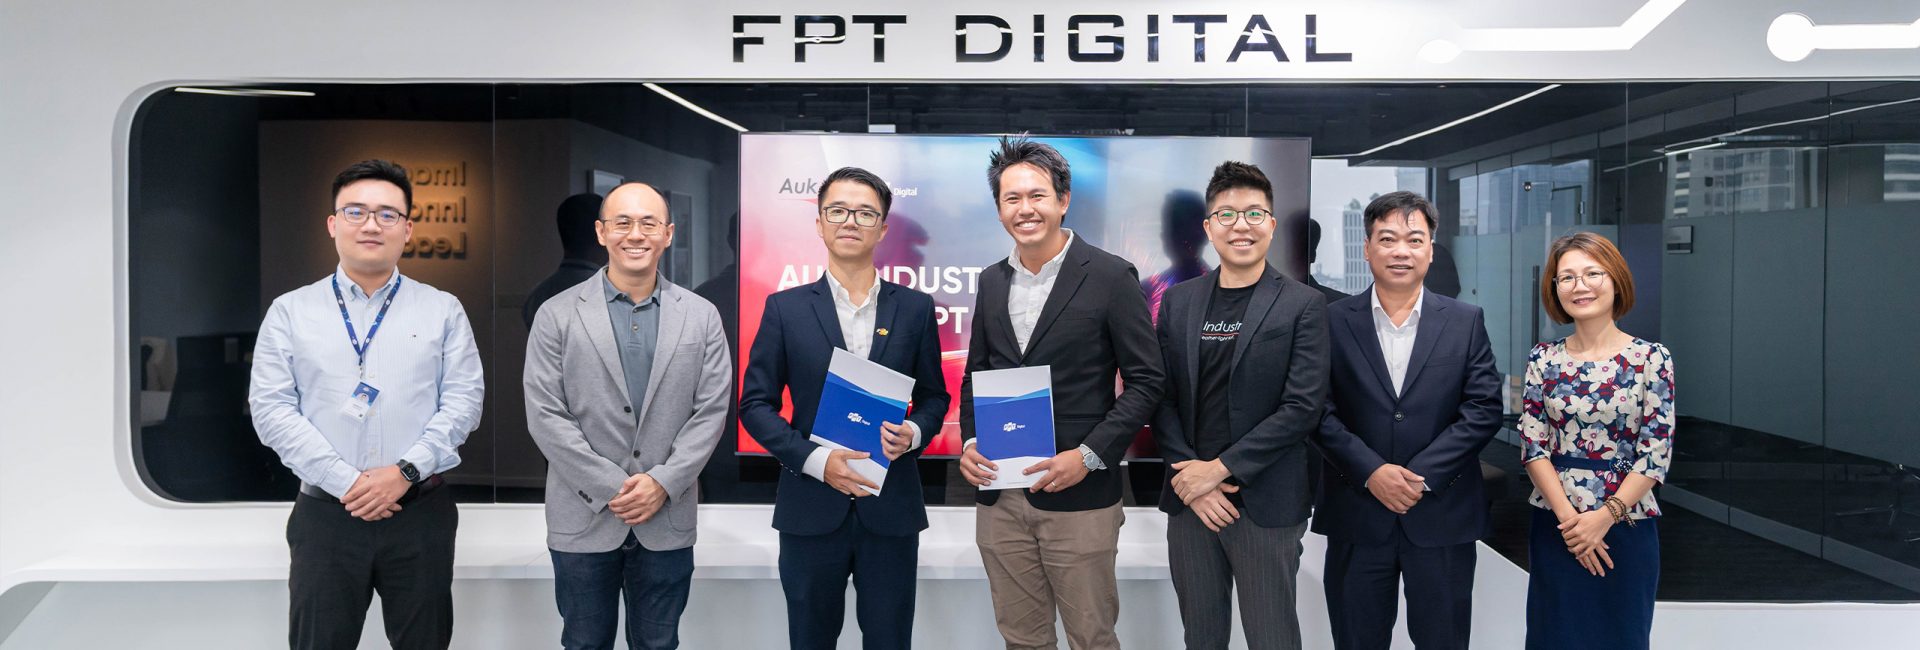 FPT Digital và AUK Industries hợp tác cùng góp phần hỗ trợ các doanh nghiệp trong và ngoài nước nâng cao quá trình số hoá.